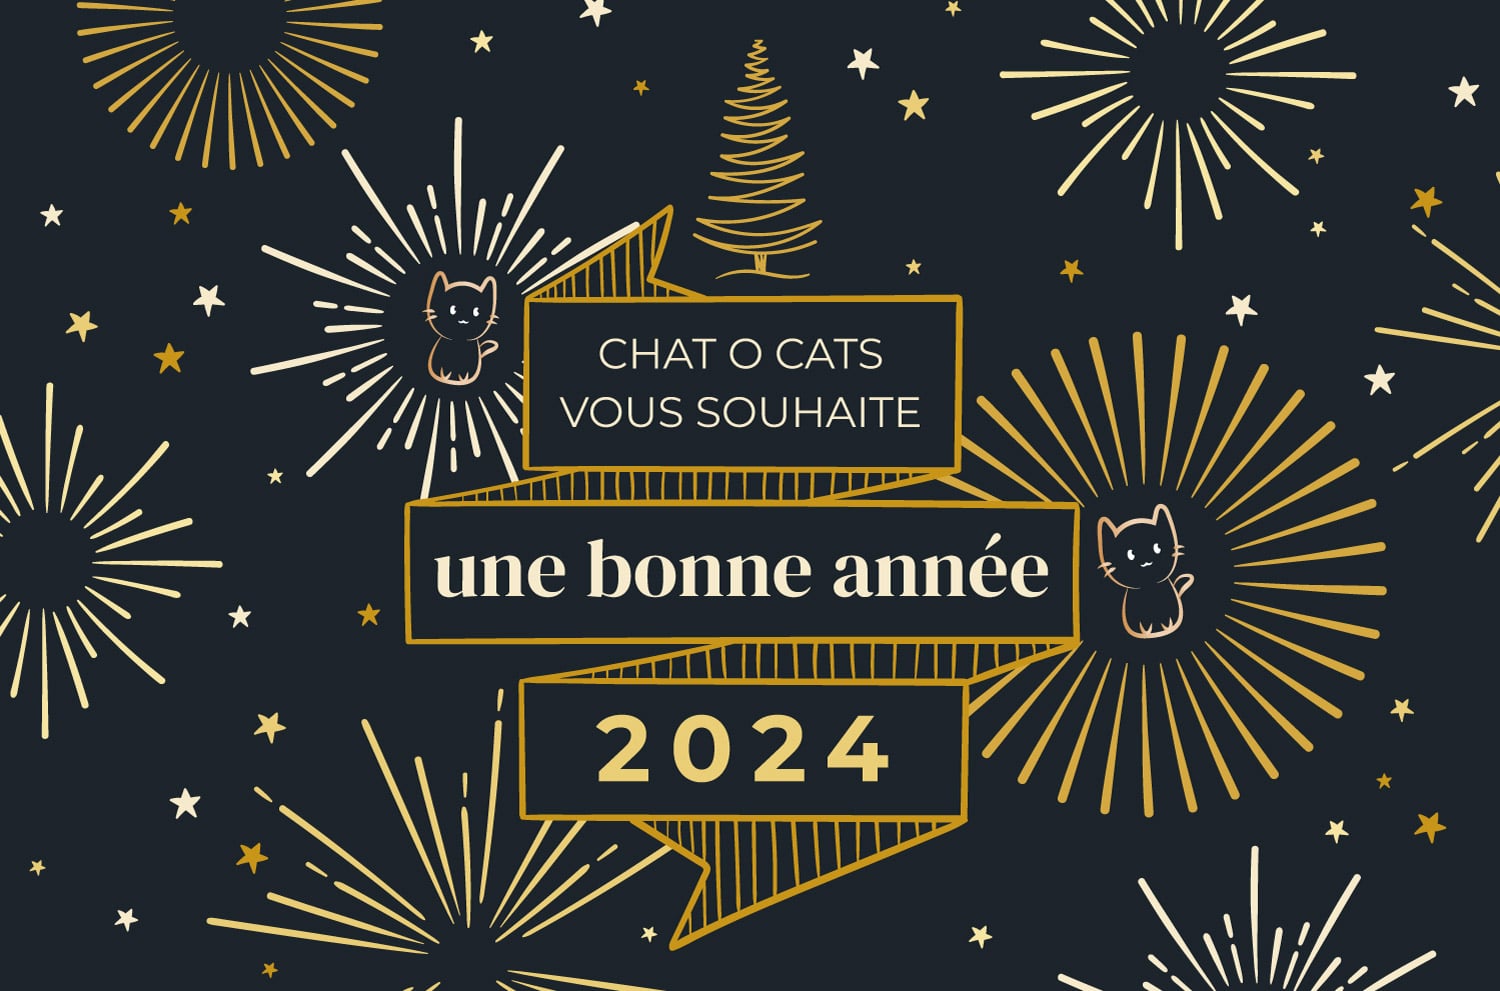 Chat O Cats vous souhaite une bonne année 2024 !